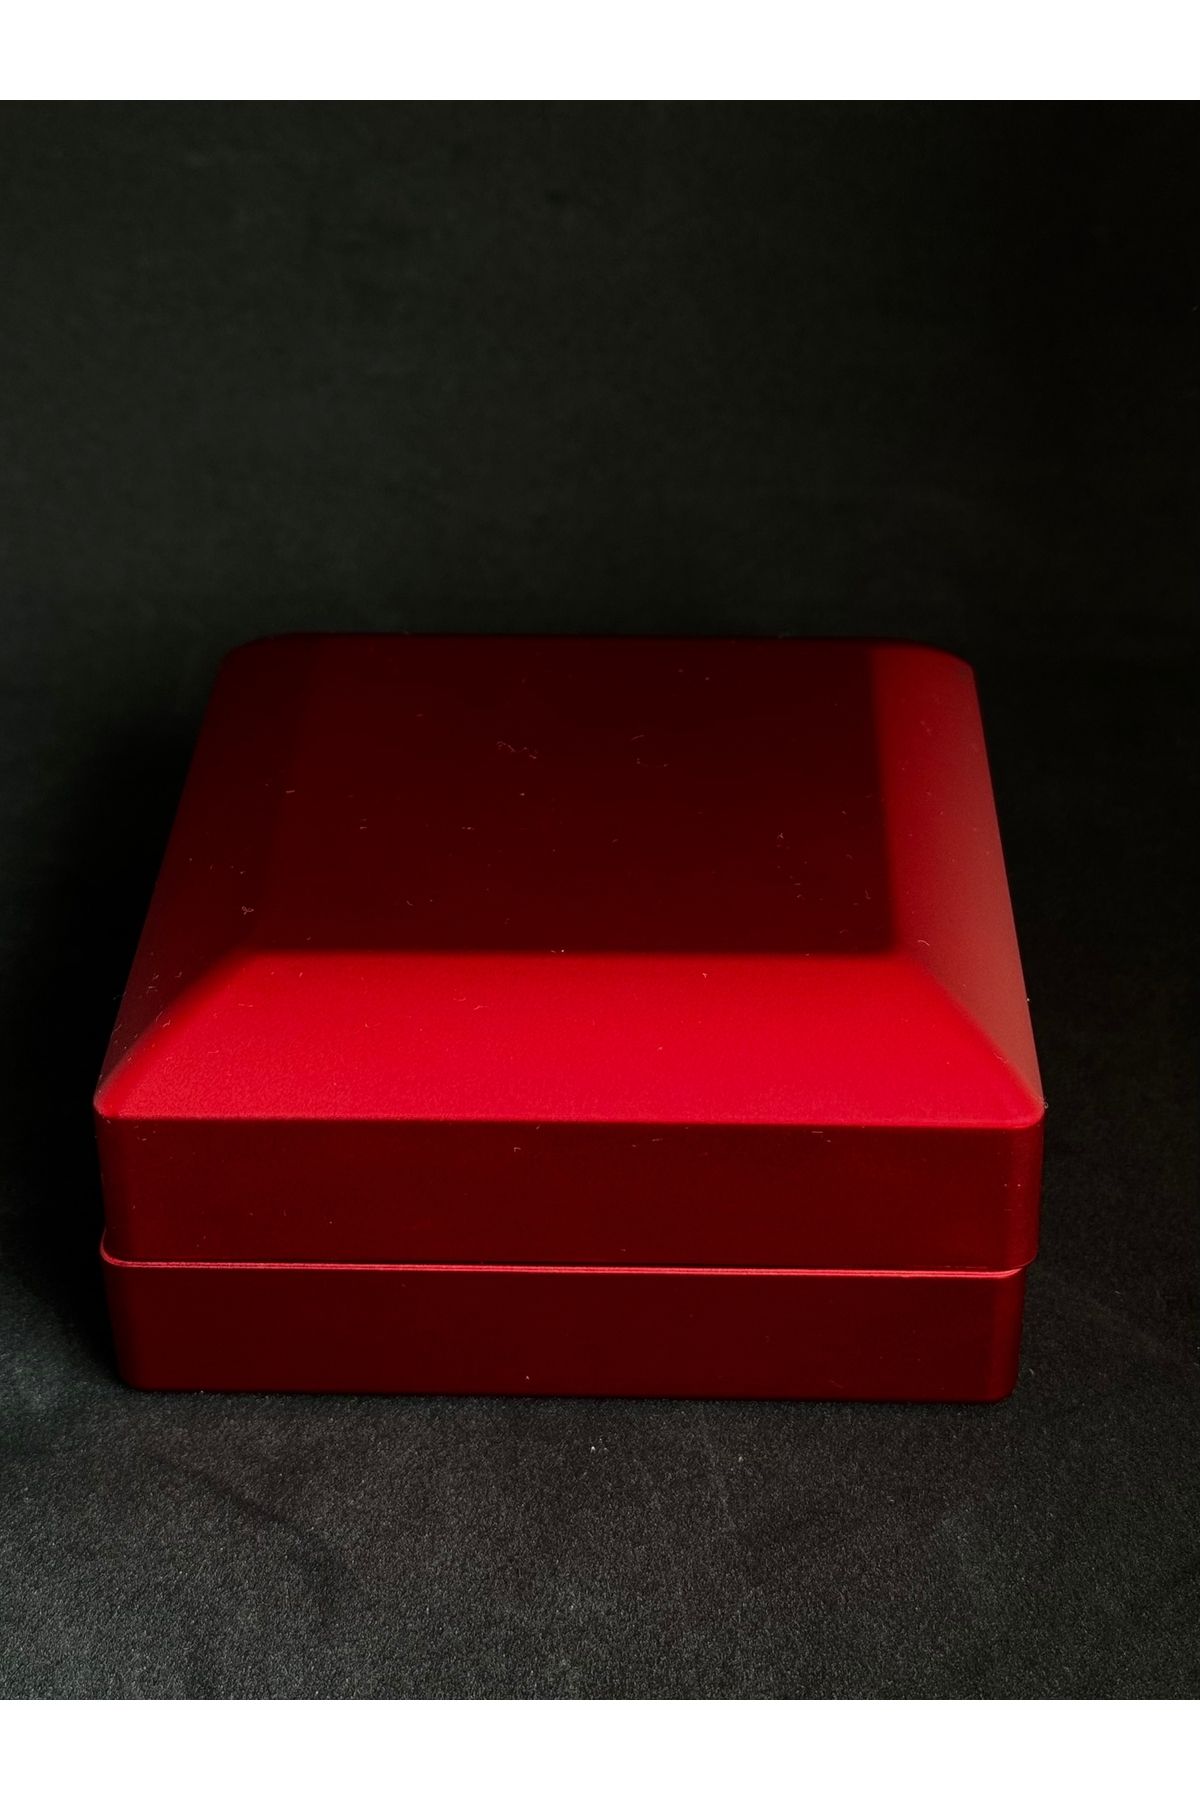 KEHRİBAREVİ EREĞLİ Led ışıklı özel kolye küpe yüzük kutusu içi siyah kadife dışı kırmızı takı kutusu